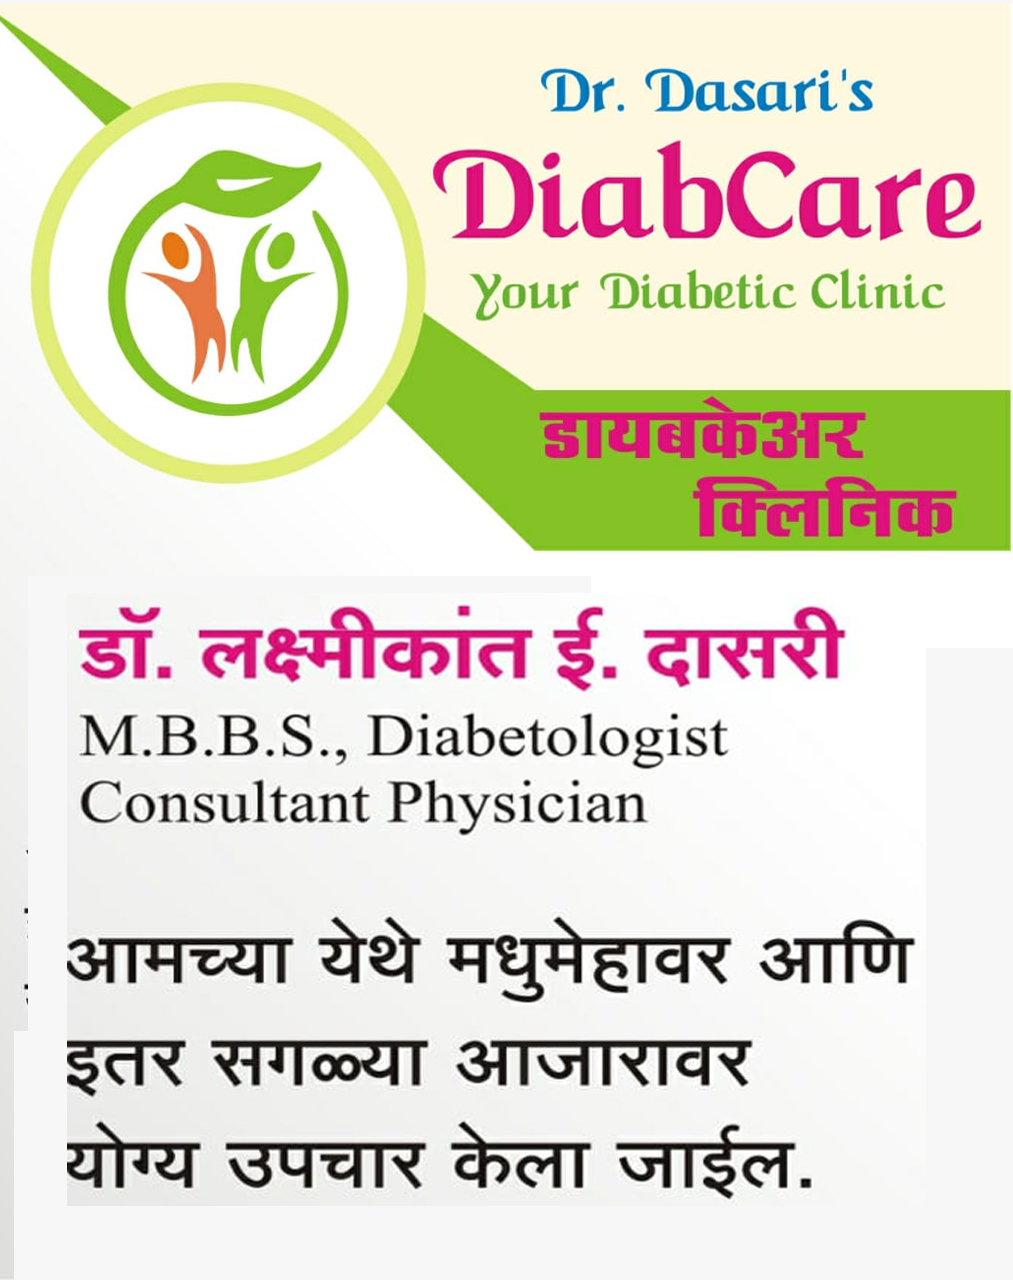 DR. DASARI DIABCARE CLINIC | SolapurMall.com